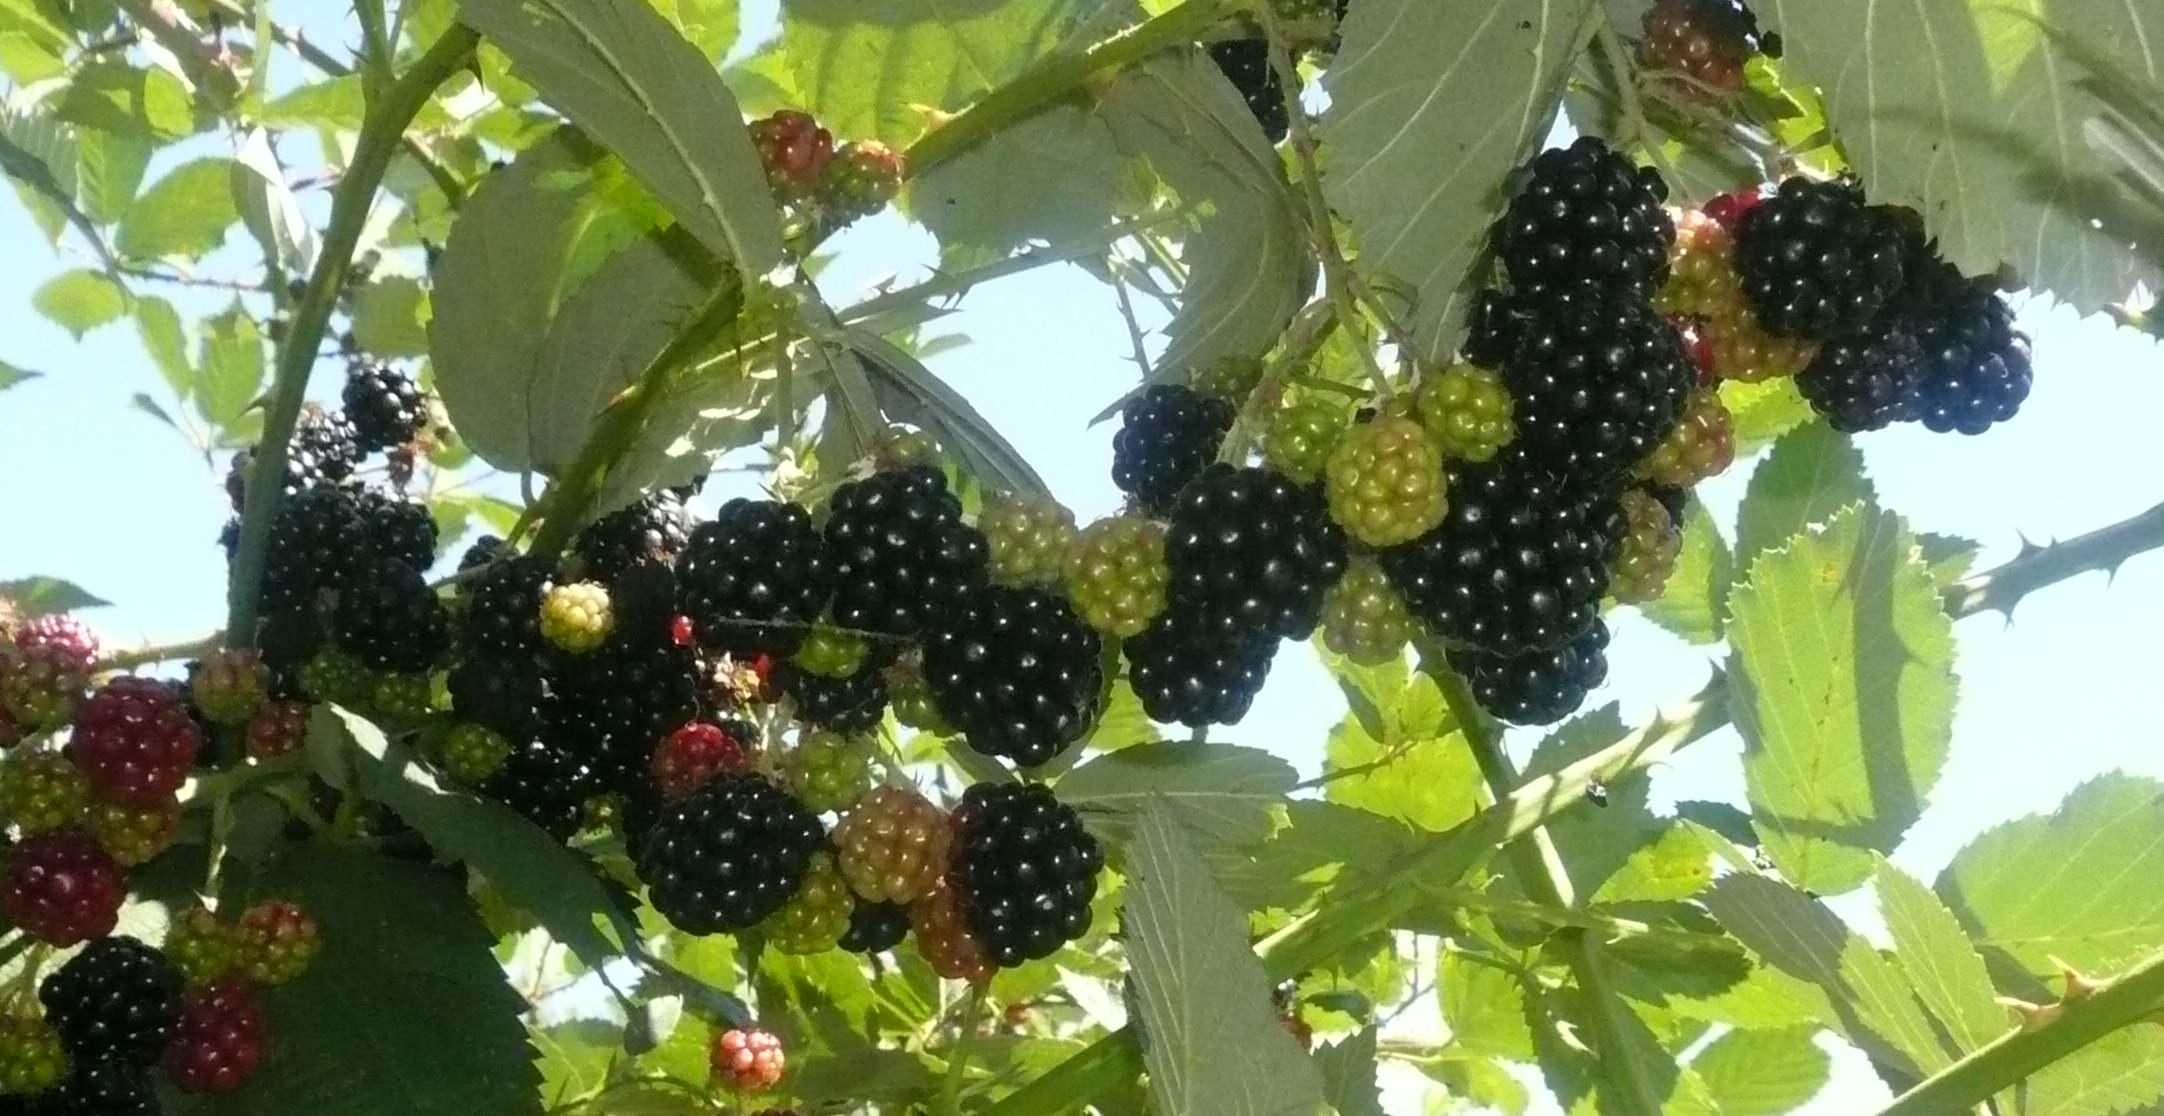 On my knees picking blackberries